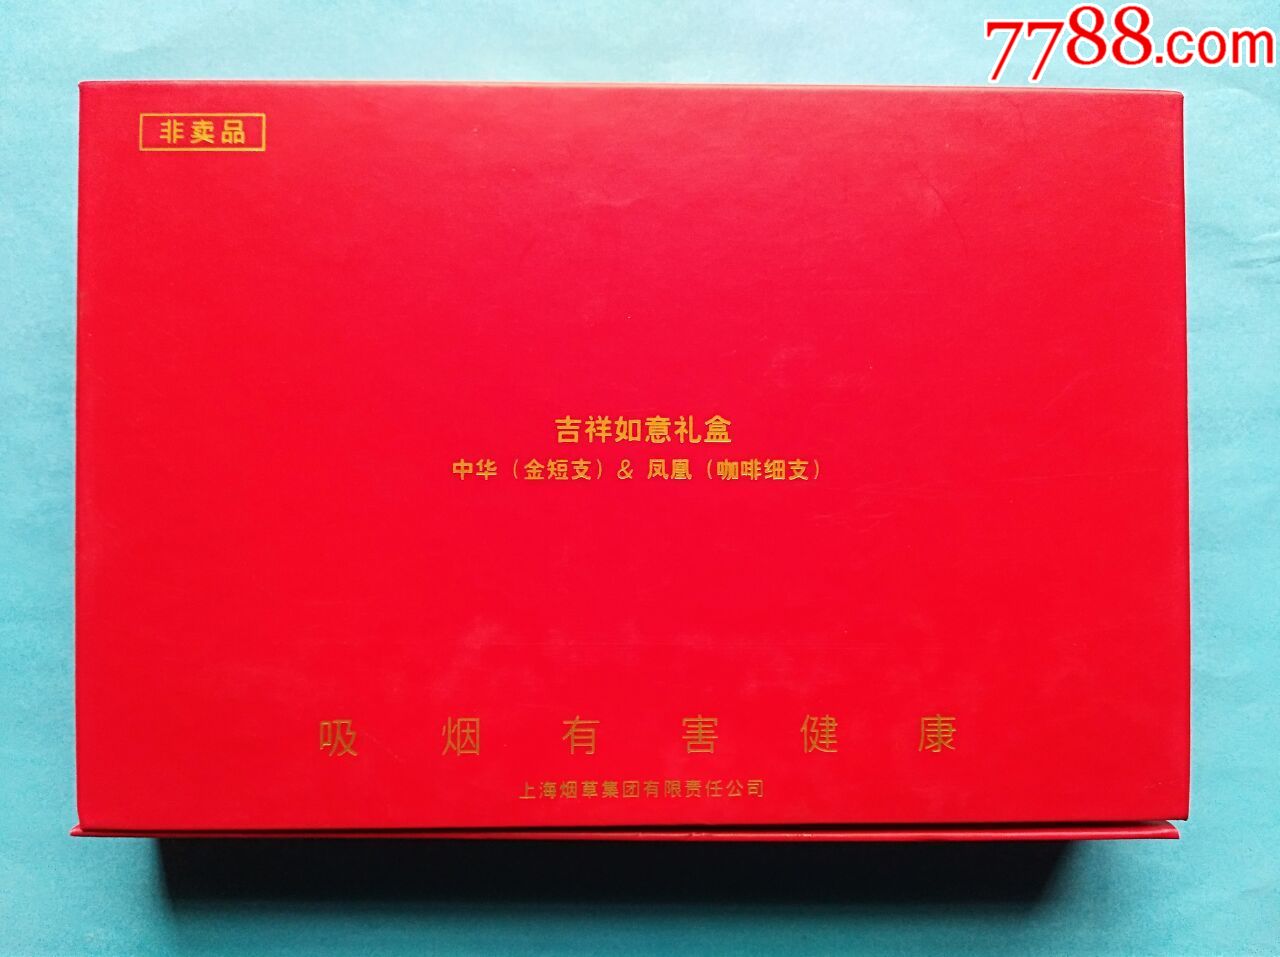 中华11包装礼盒图片